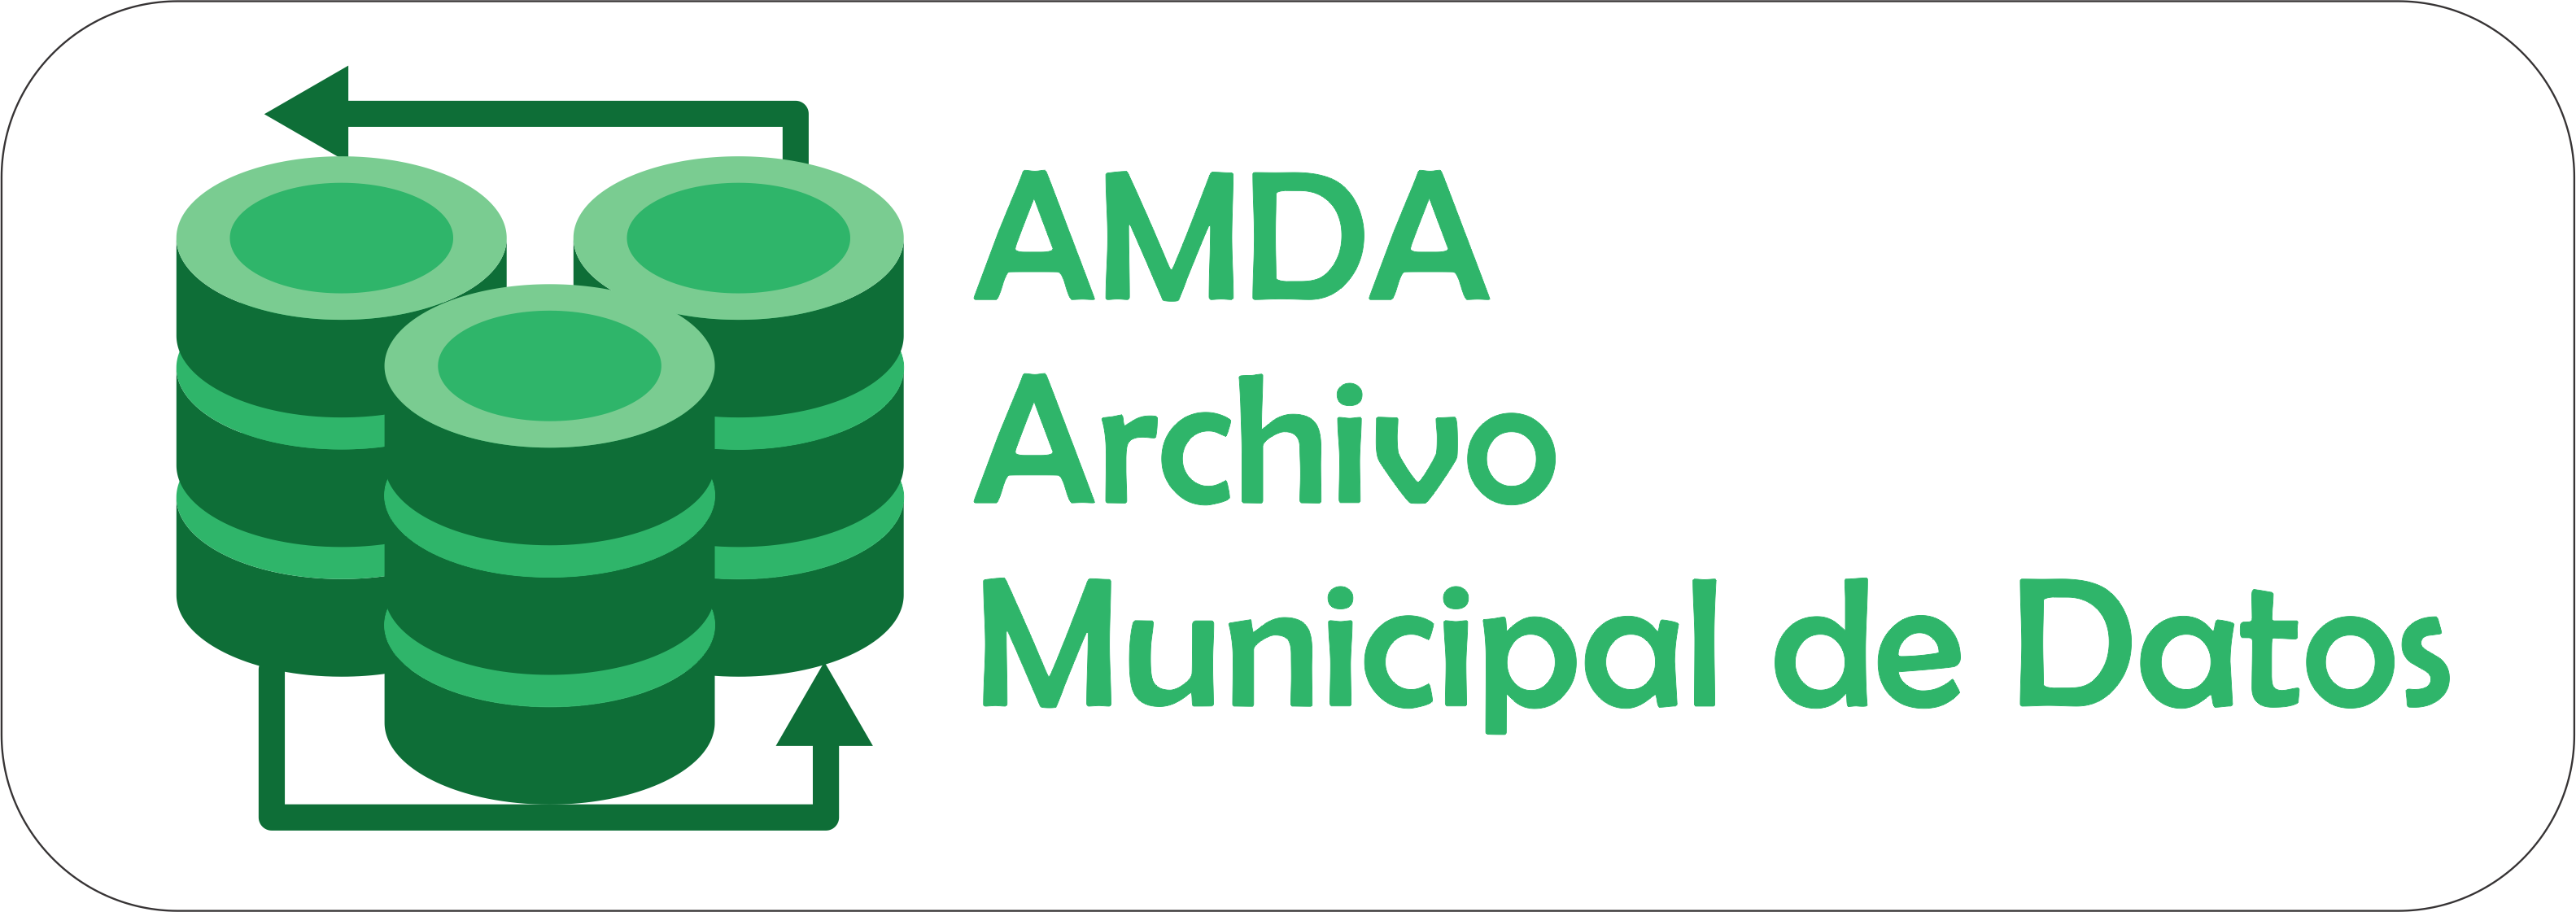 Imagen de presentación del Archivo Municipal de Datos - AMDA